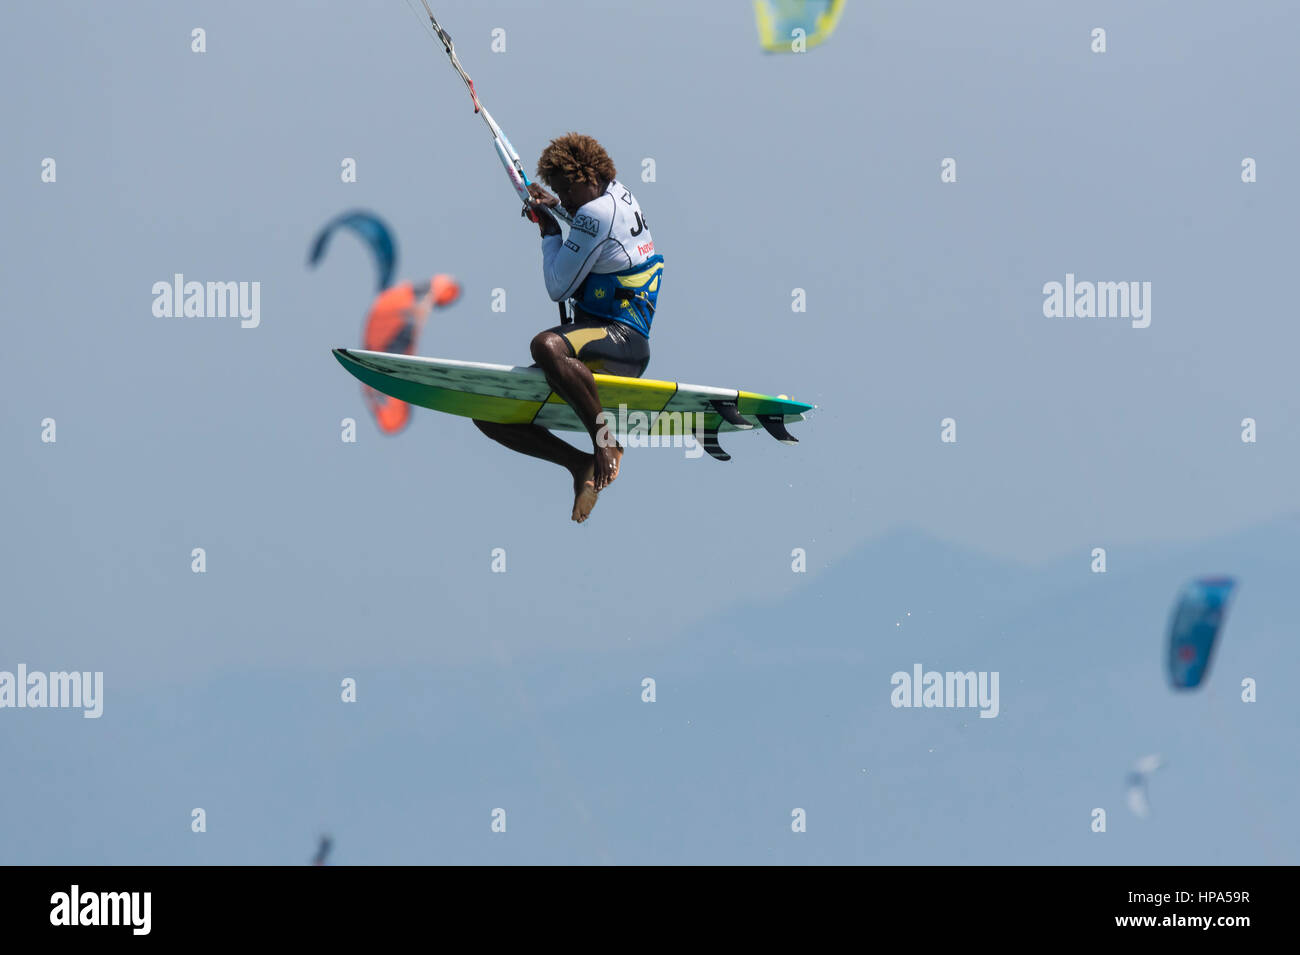 Kitesurfing action. Stock Photo